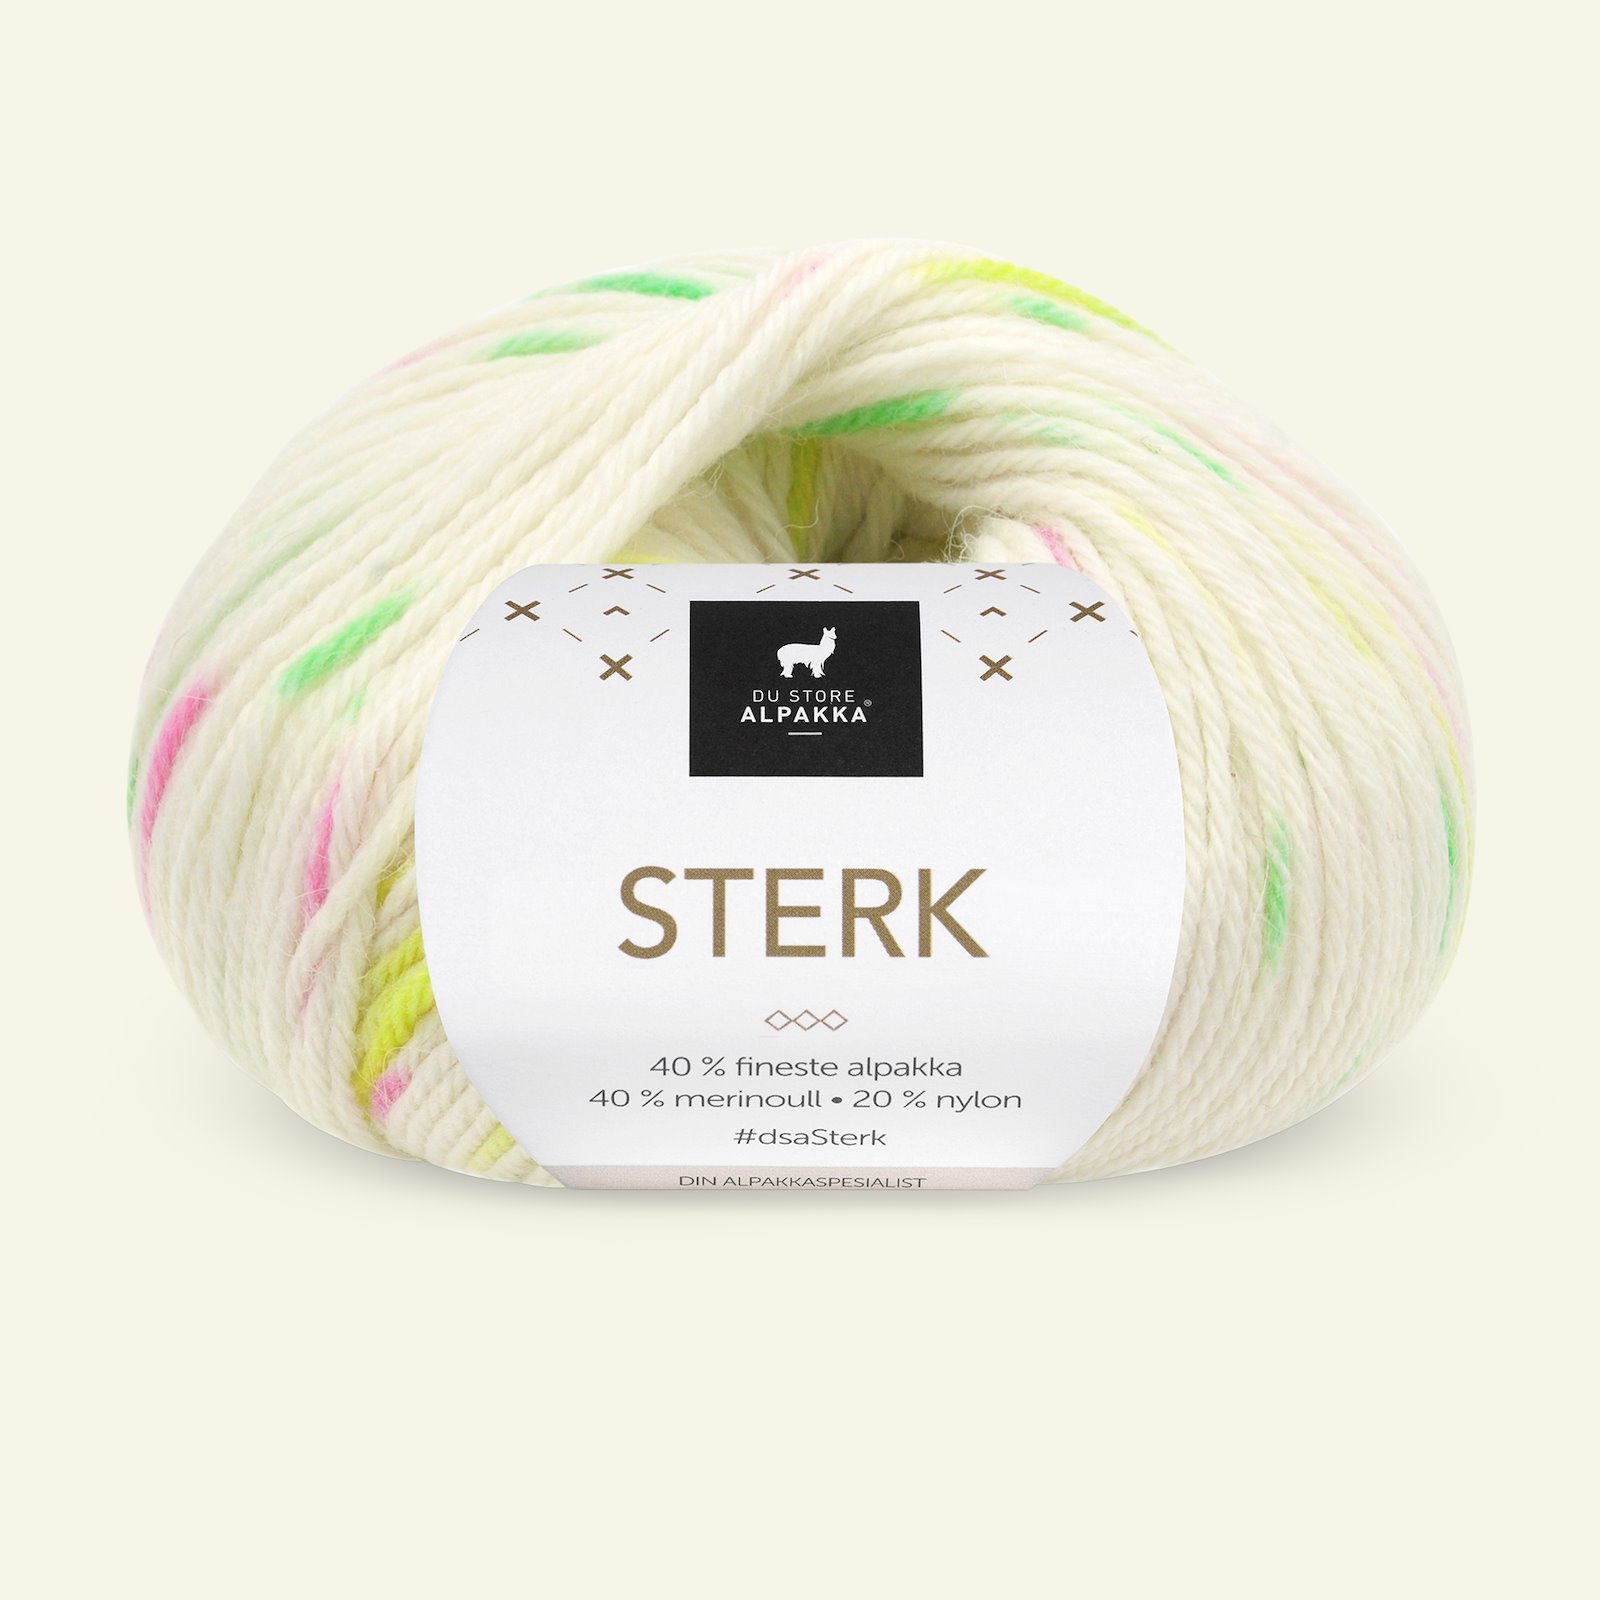 Du Store Alpakka Sterk white/neon print 90001239_pack